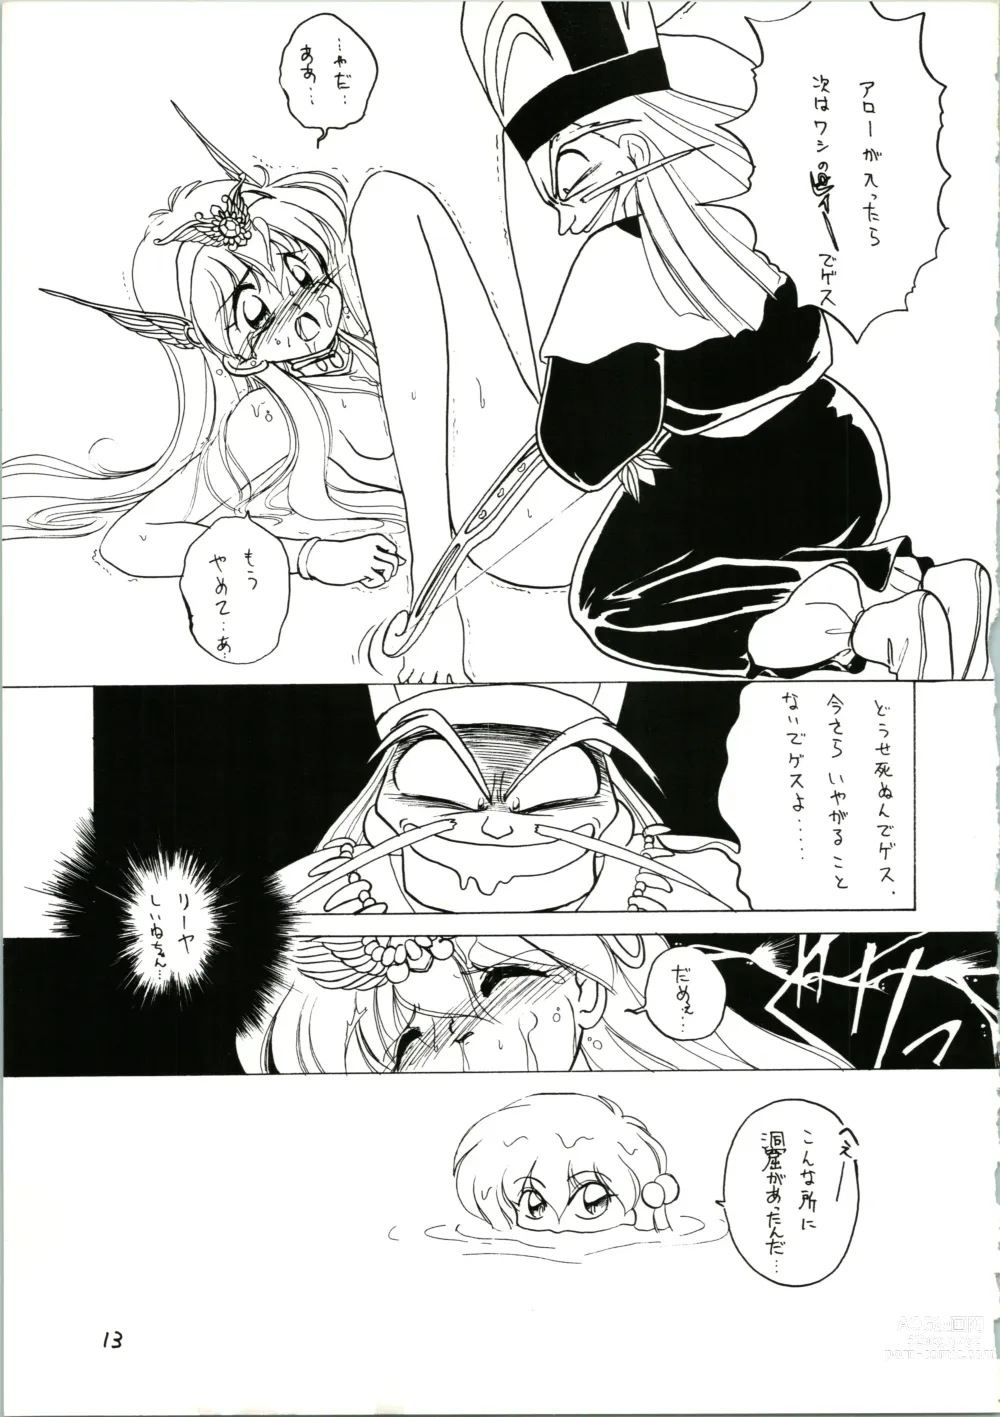 Page 13 of doujinshi Katatoki